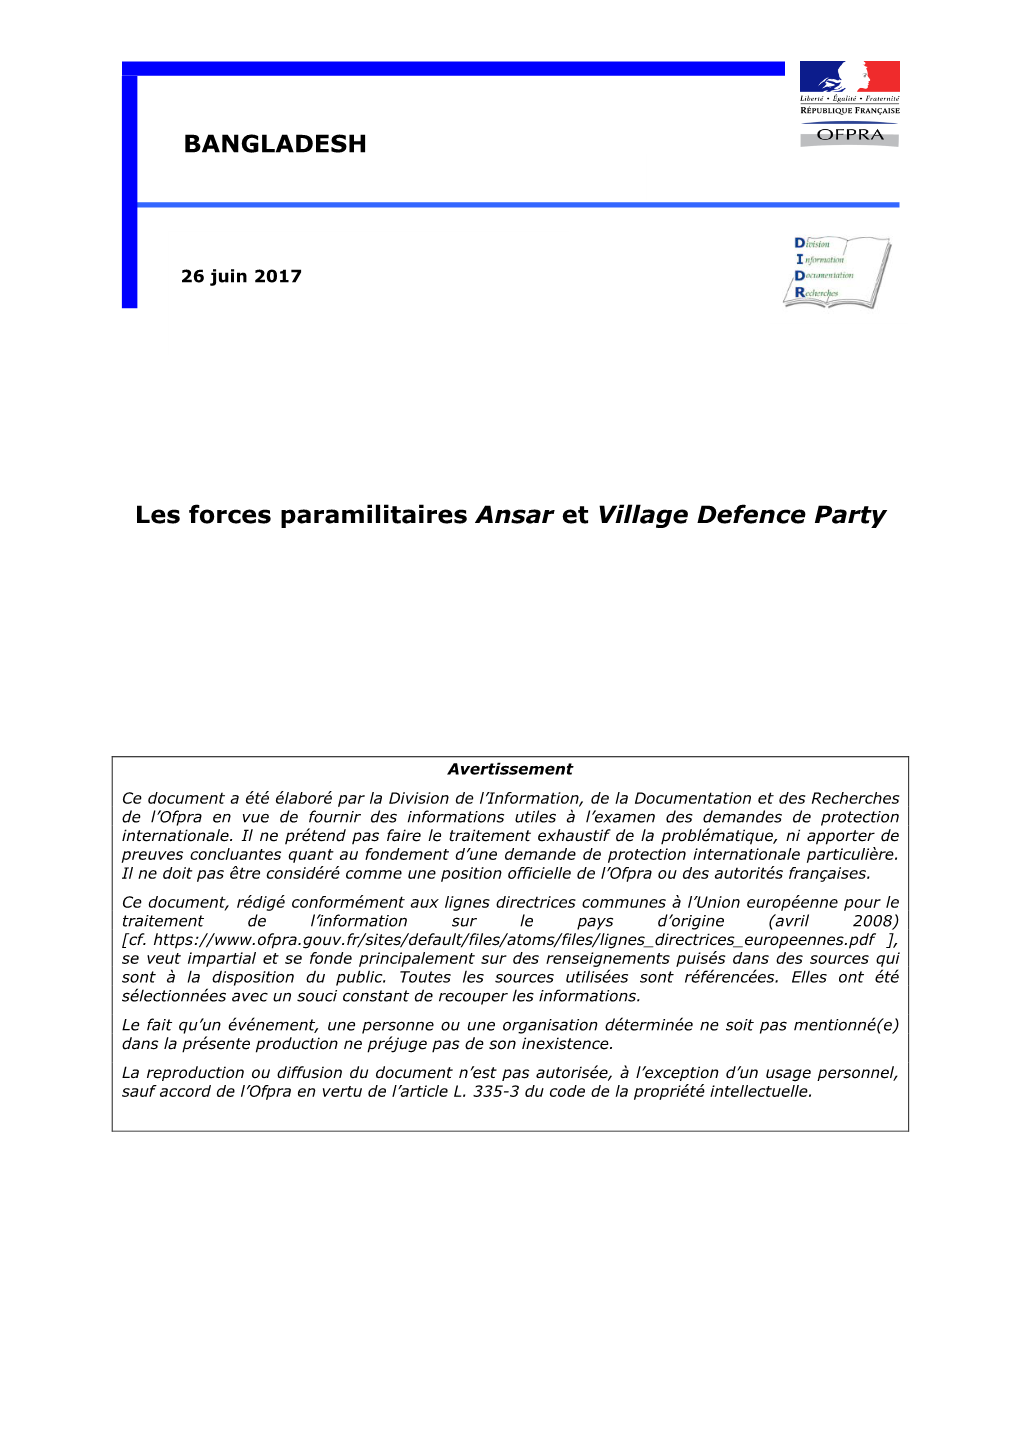 Les Forces Paramilitaires Ansar Et Village Defence Party (VDP)